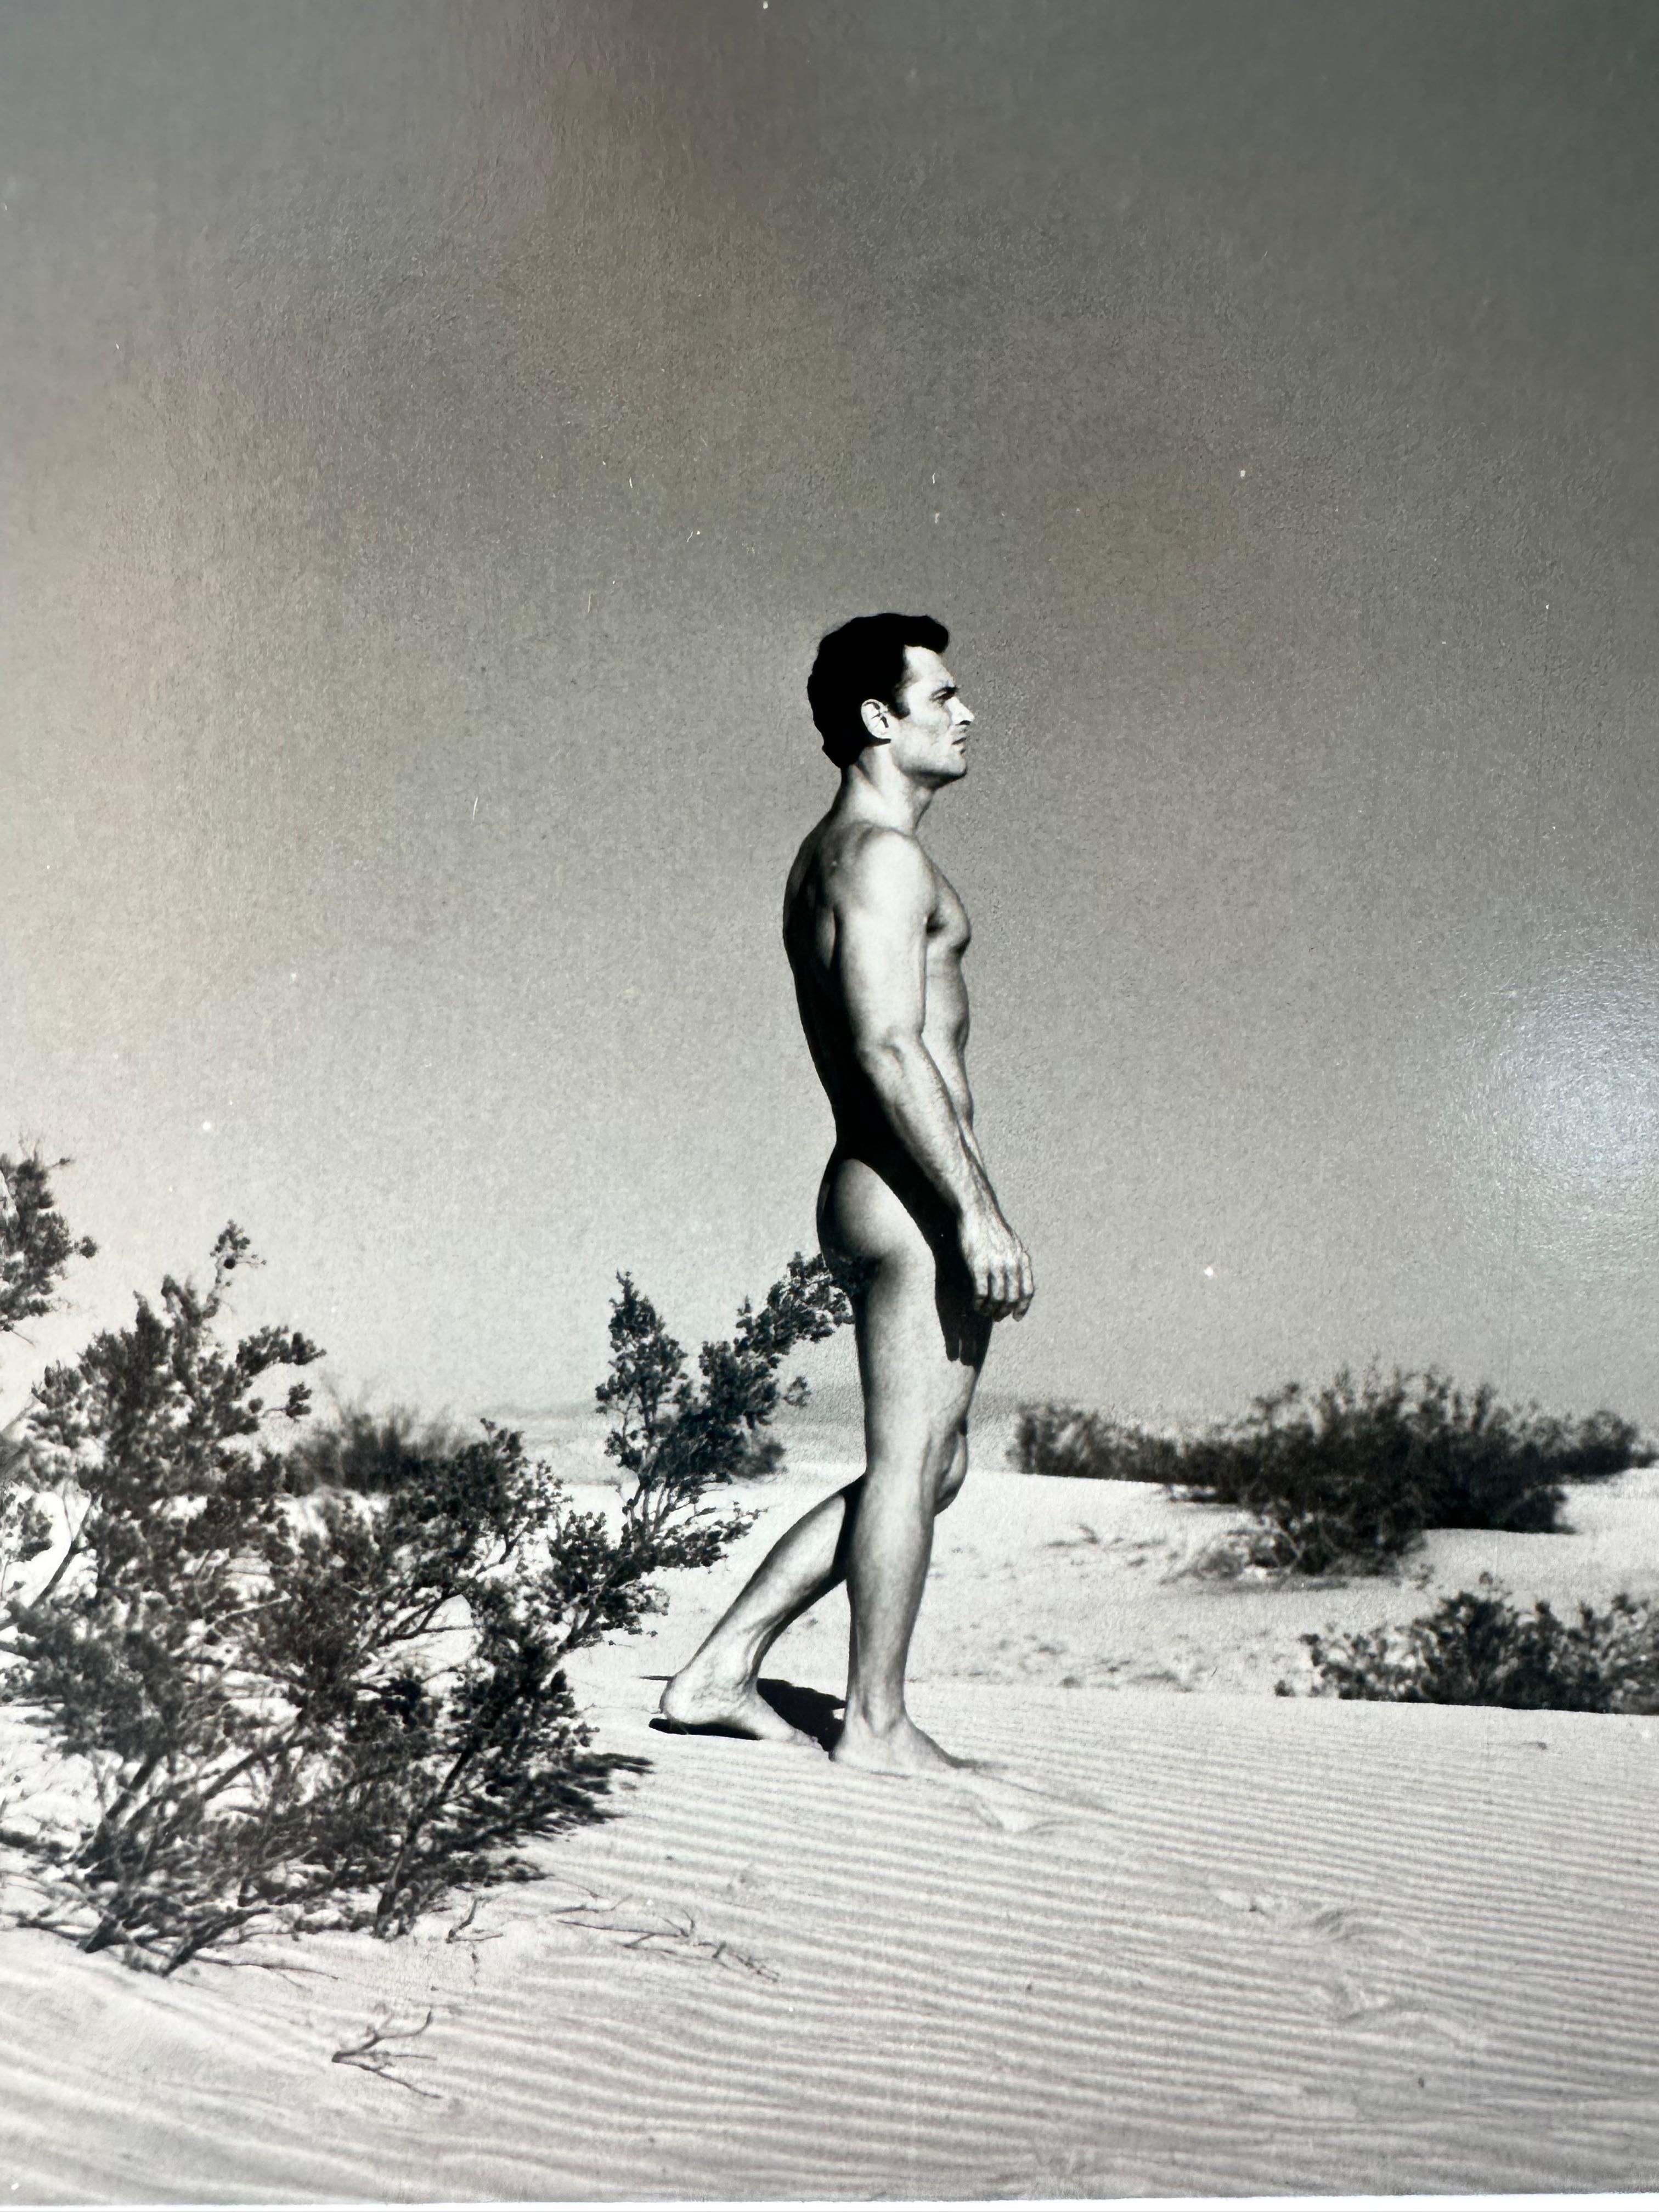 Männlicher Akt Wüstenlandschaft Studie  – Photograph von Roy Dean